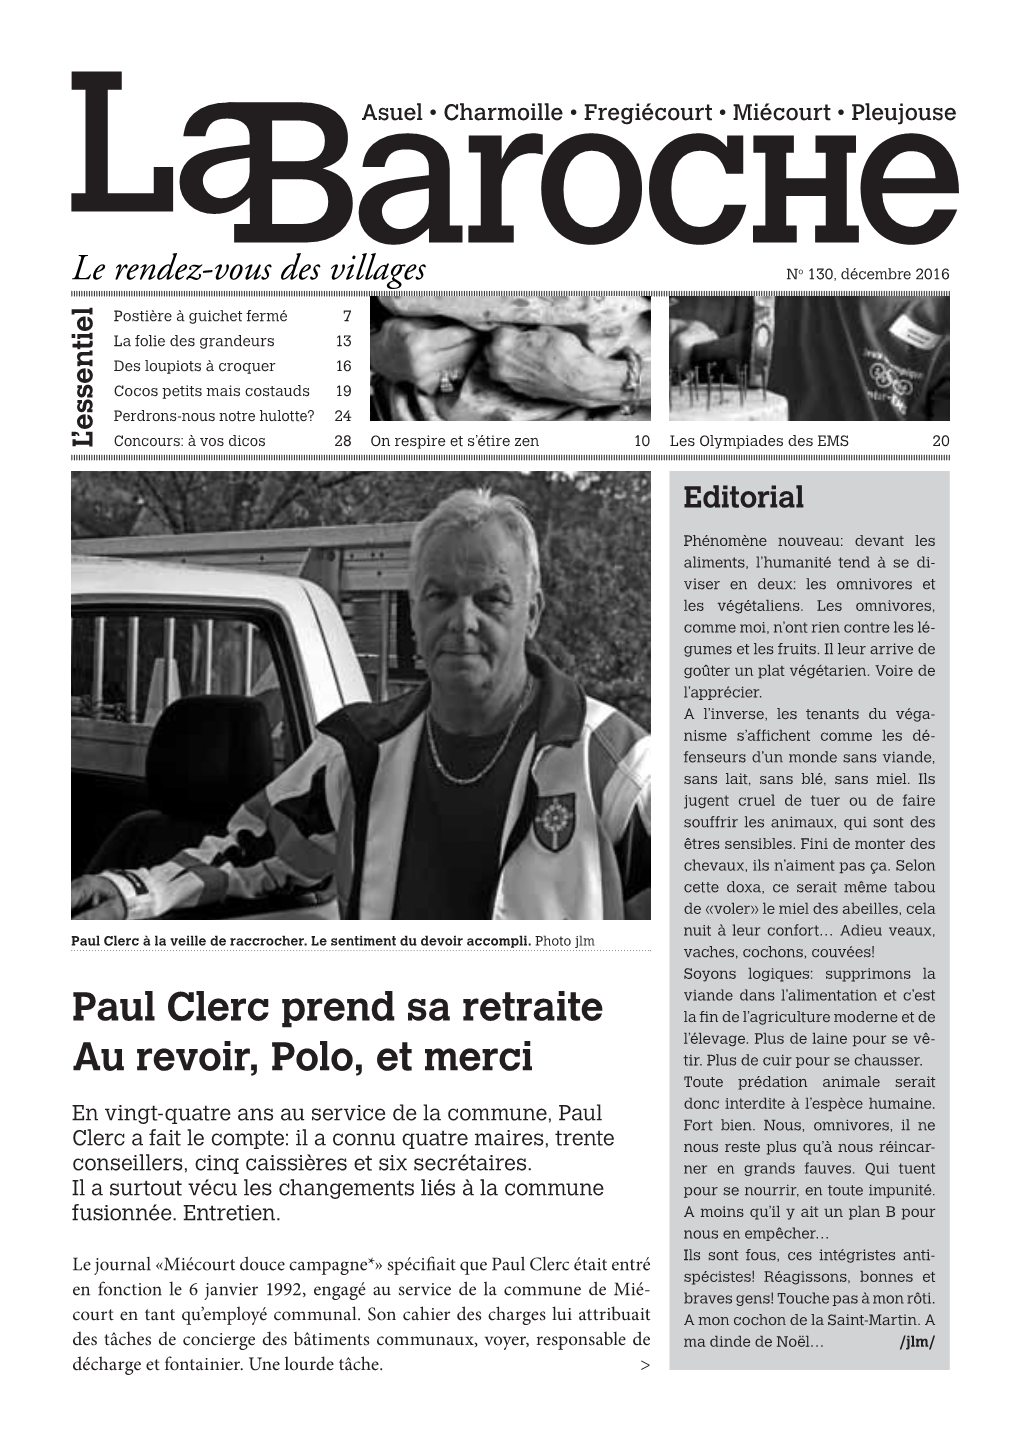 Paul Clerc Prend Sa Retraite Au Revoir, Polo, Et Merci